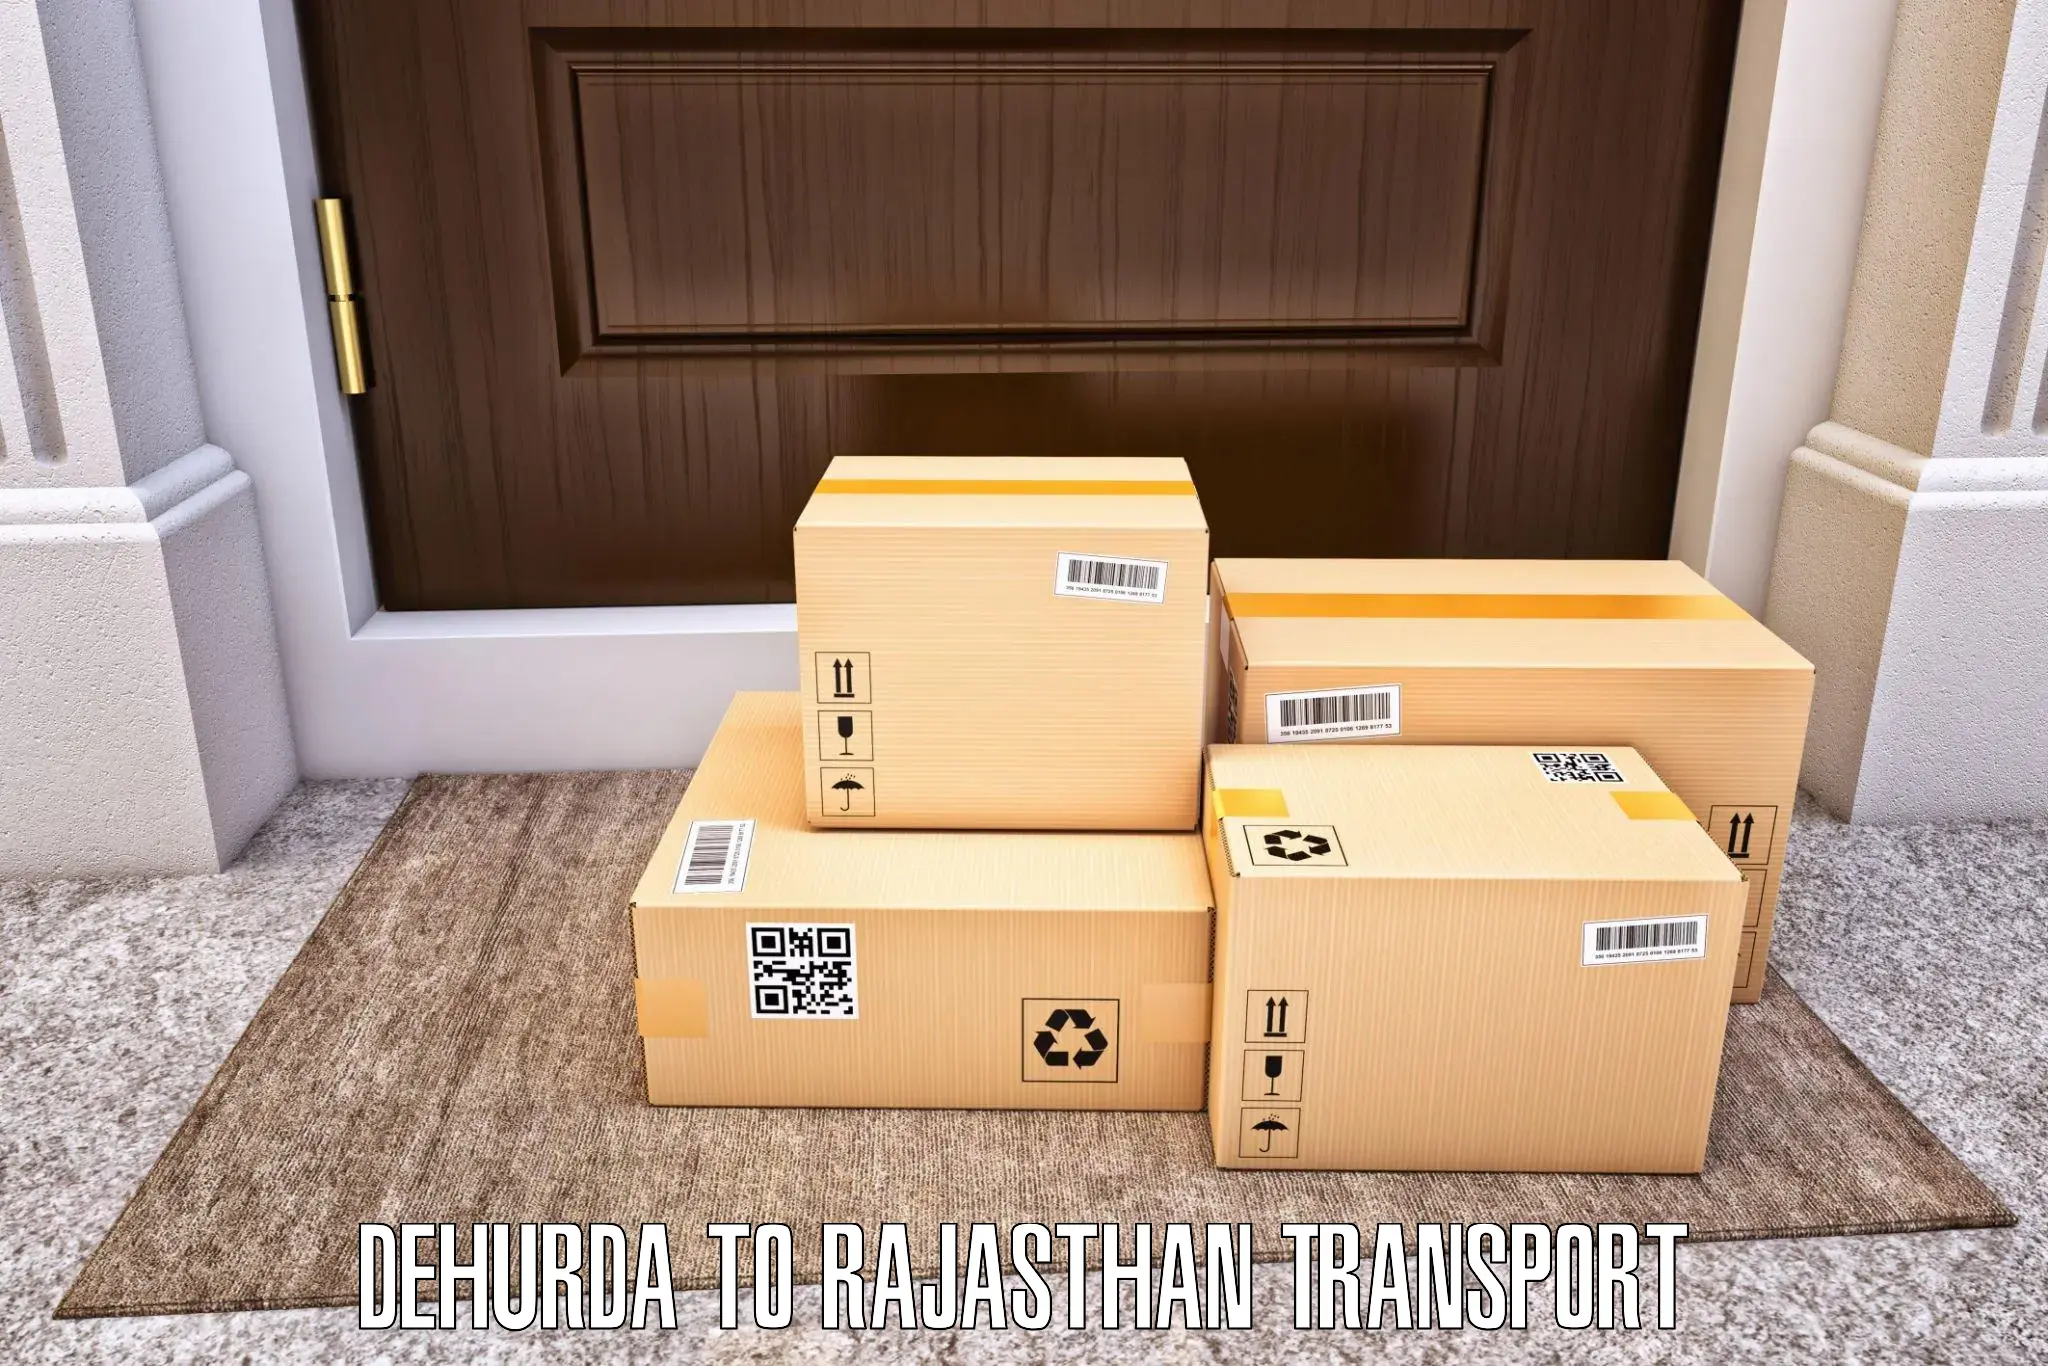 Domestic goods transportation services Dehurda to Parbatsar